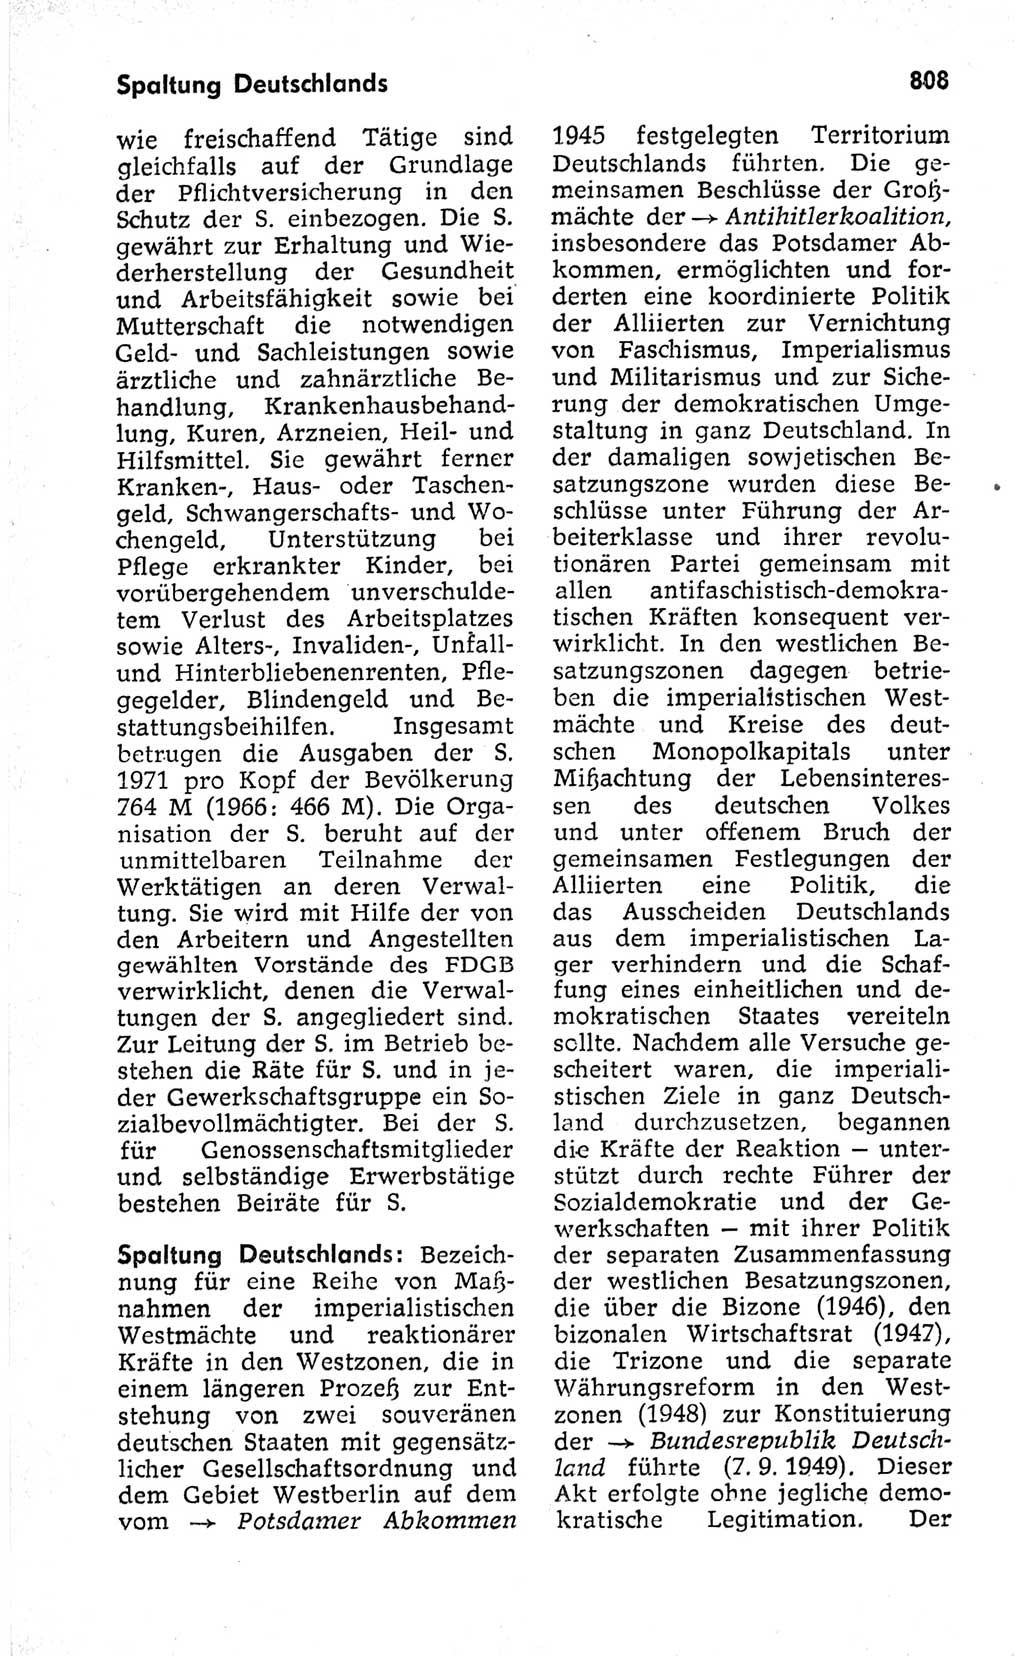 Kleines politisches Wörterbuch [Deutsche Demokratische Republik (DDR)] 1973, Seite 808 (Kl. pol. Wb. DDR 1973, S. 808)